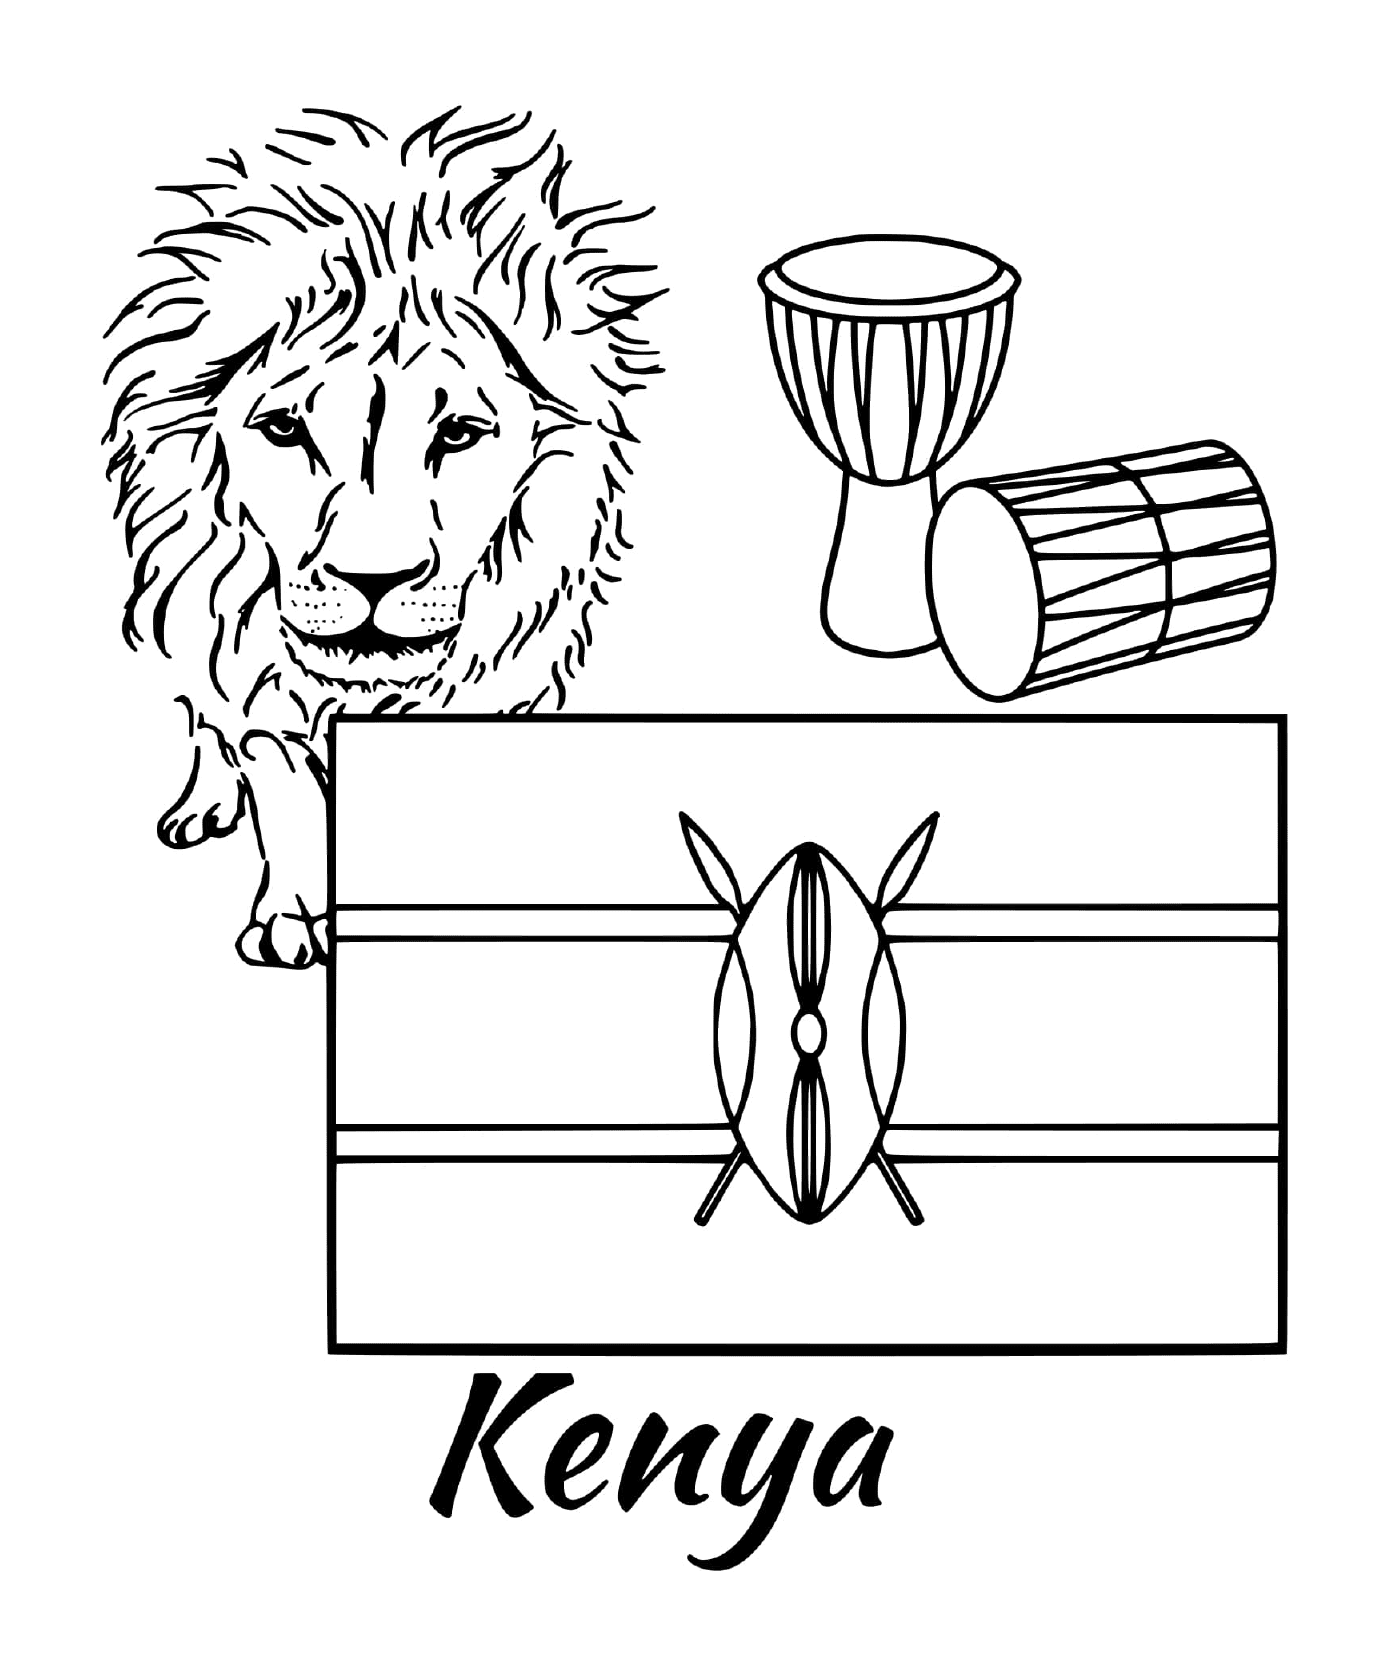  Flag of Kenya, lion 